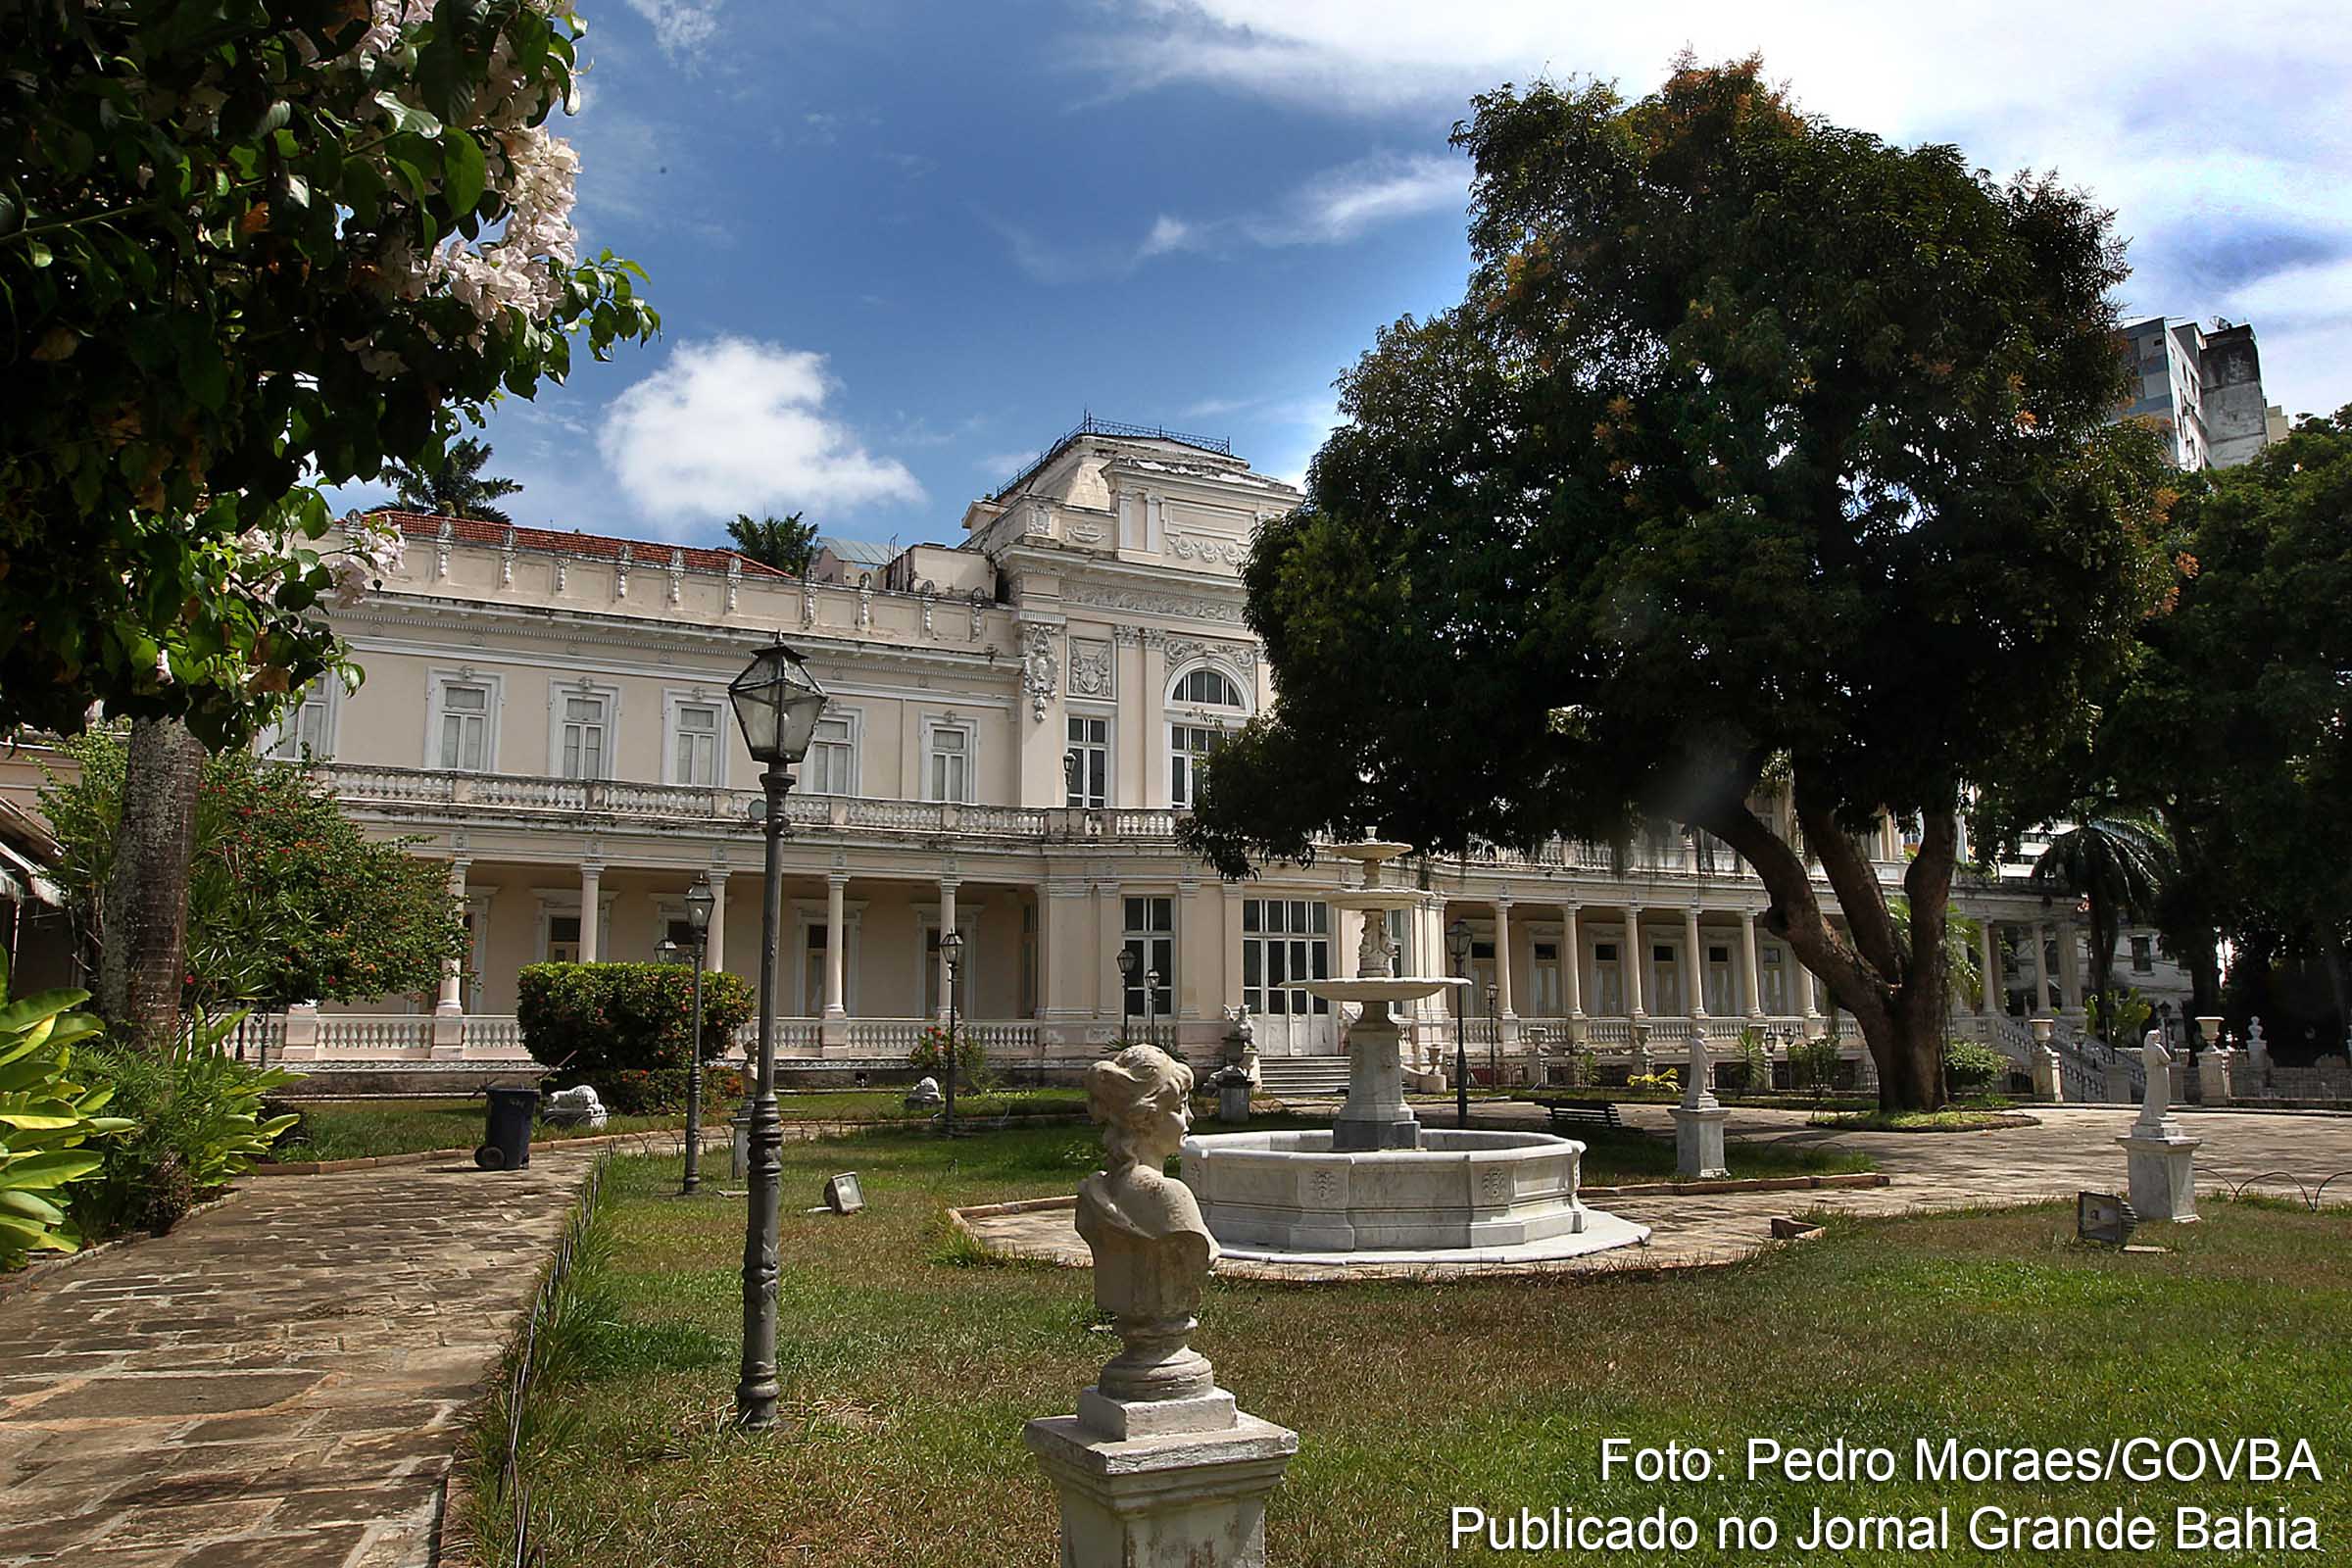 O Teatro Vila Velha é uma casa para espetáculos teatrais da cidade de Salvador. Ele é conhecido por 'Vila', cuja fundação data de 1964. O teatro está localizado à Avenida Sete, no interior do Passeio Público (Bairro do Campo Grande).